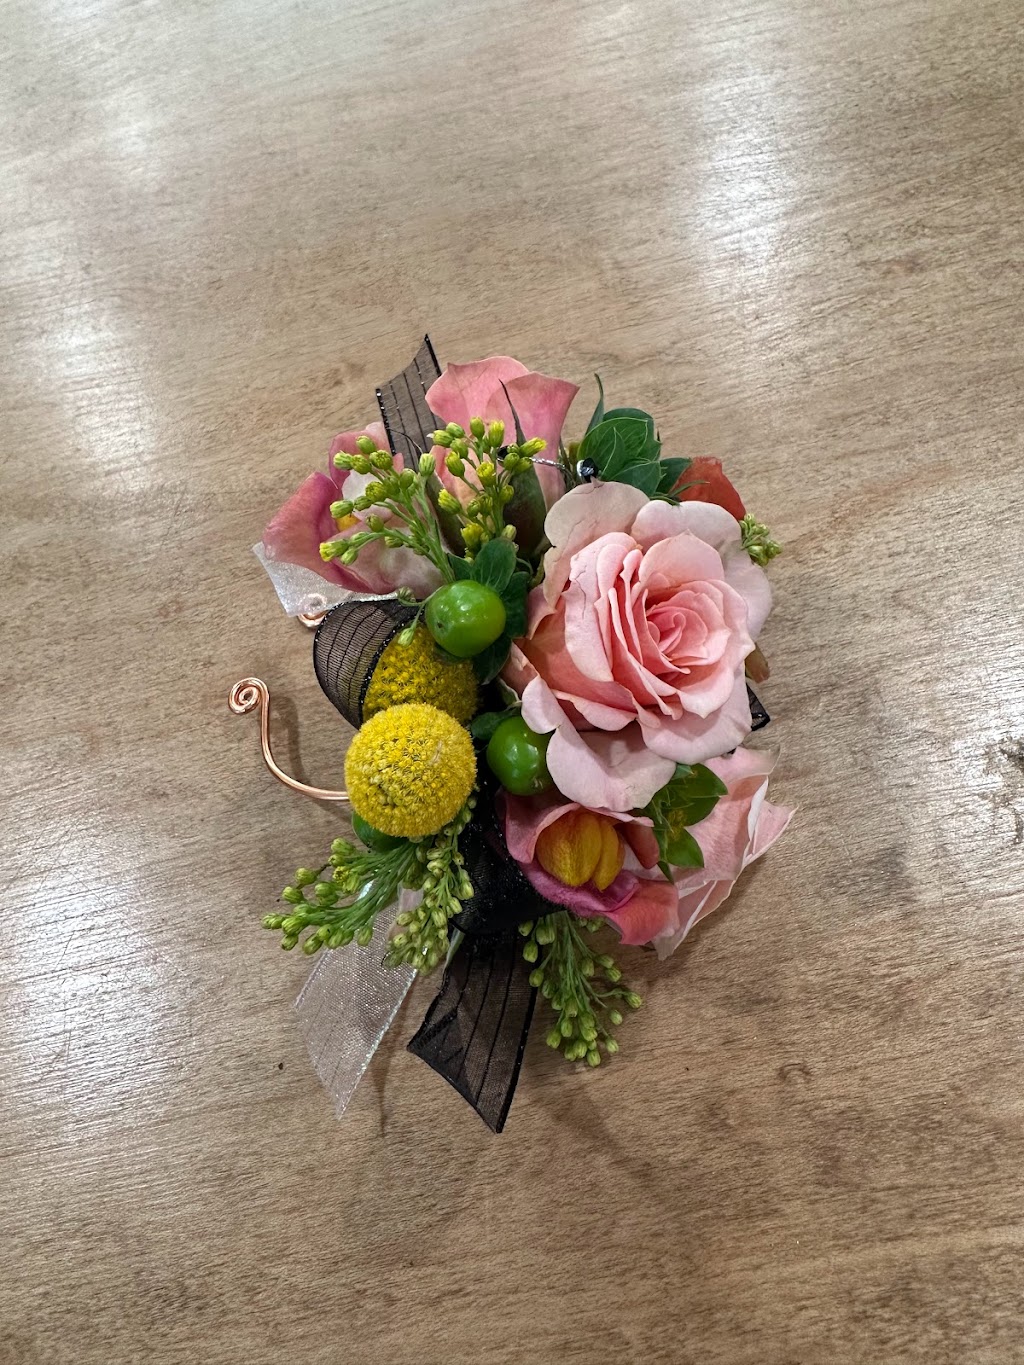 La Fiorella Floral Design | 206 Sunset Rd, Burlington, NJ 08016 | Phone: (609) 614-1569